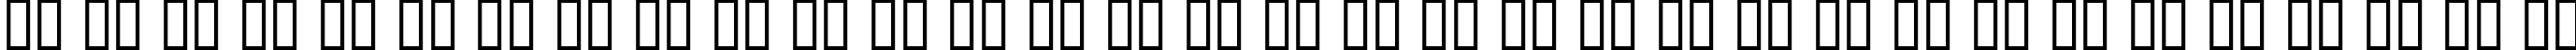 Пример написания русского алфавита шрифтом FrederickText